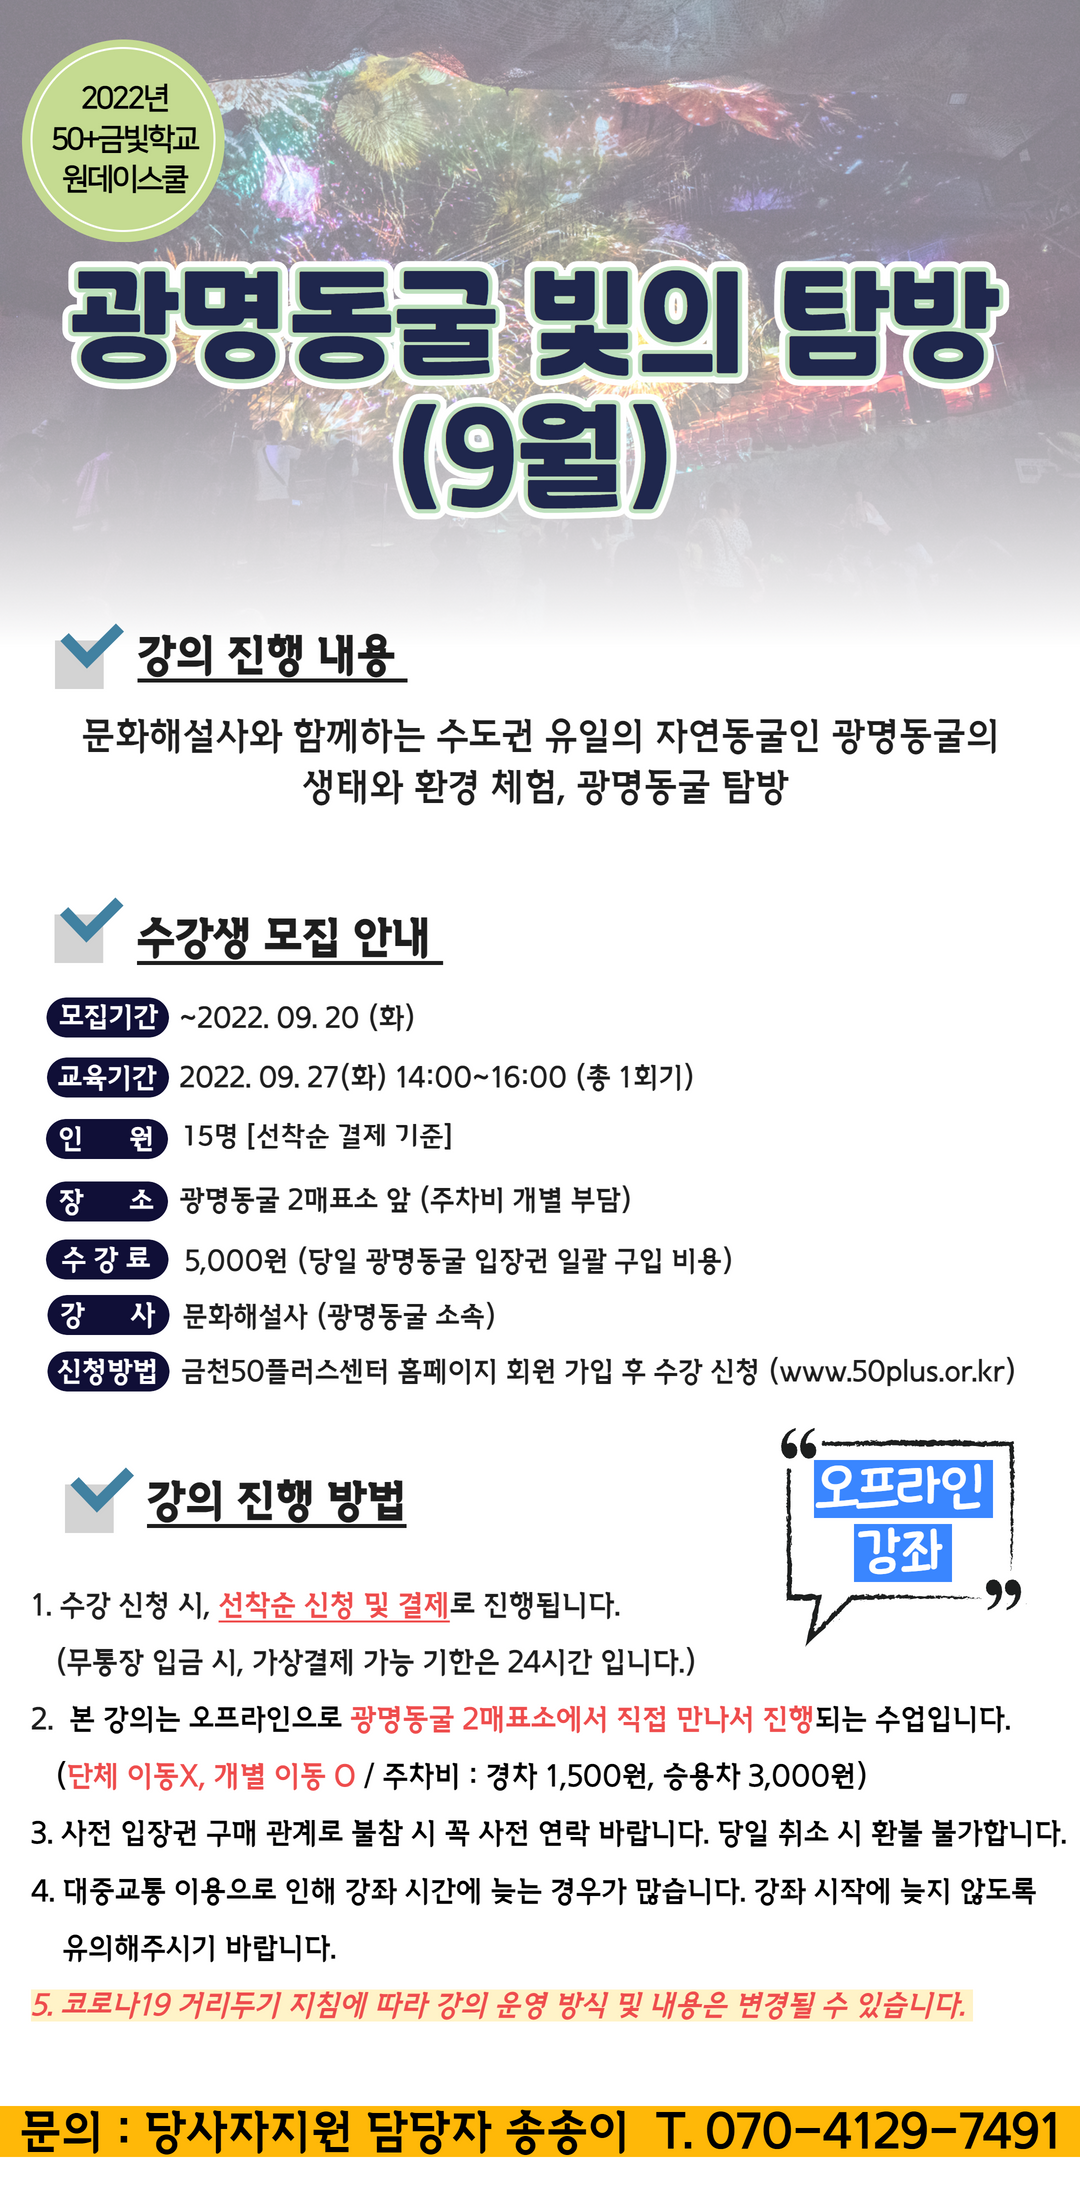 홍보지-광명동굴(9월).png